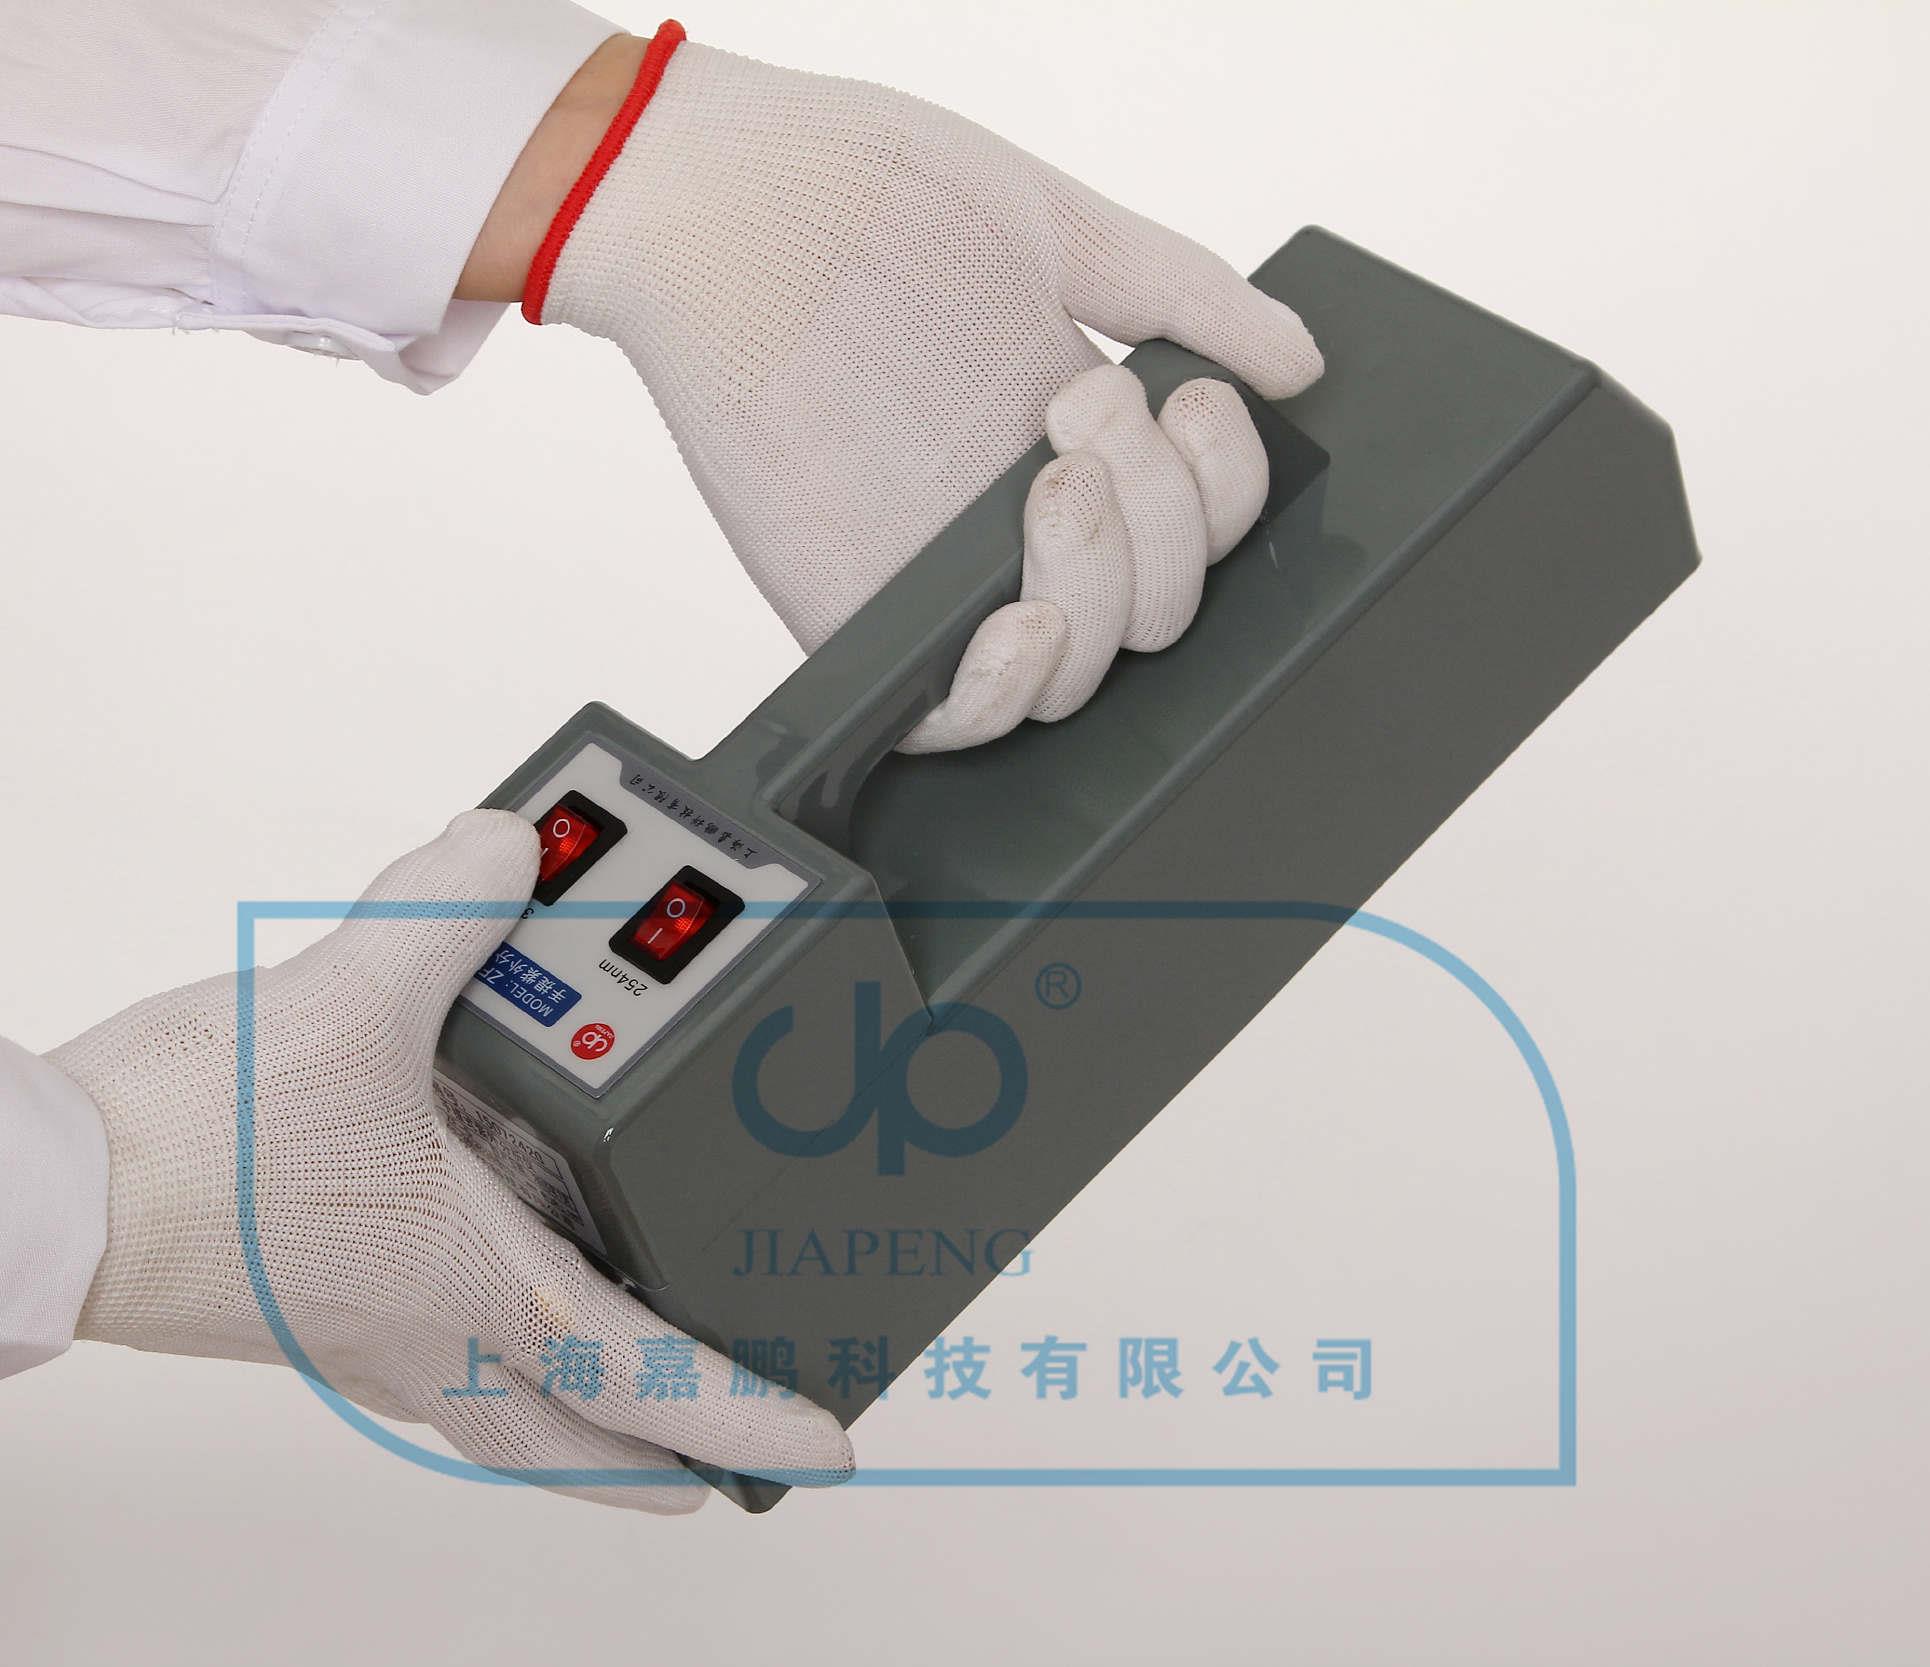 上海嘉鹏手提式紫外分析仪ZF-5C